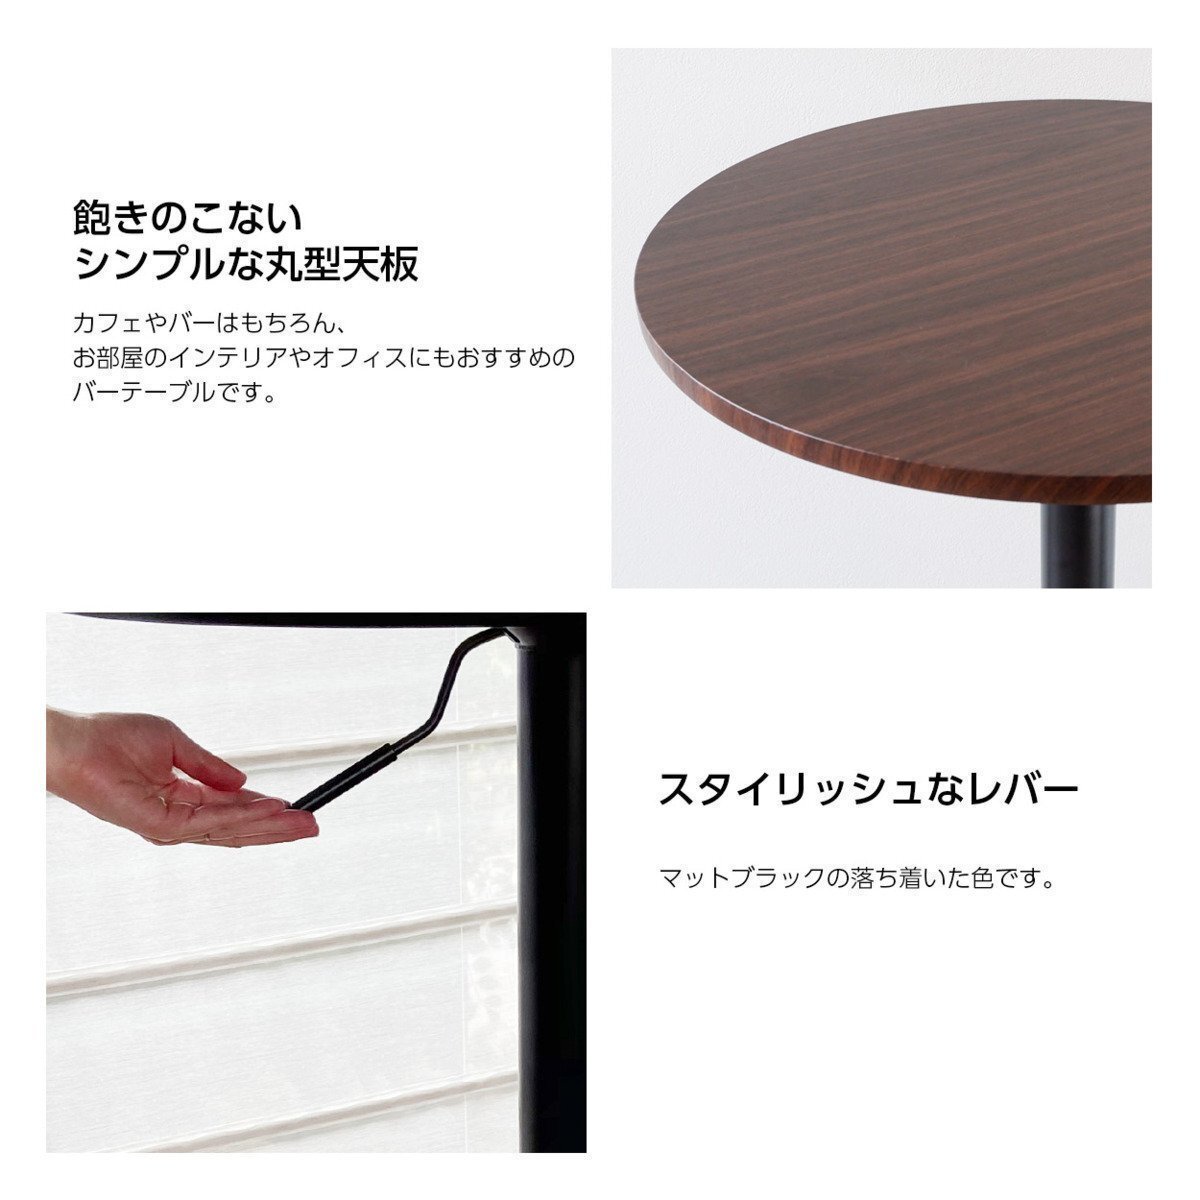 【新品】木製 丸型 バーテーブル BT-01A ダークブラウン 黒脚タイプ カウンターテーブル 直径60_画像4